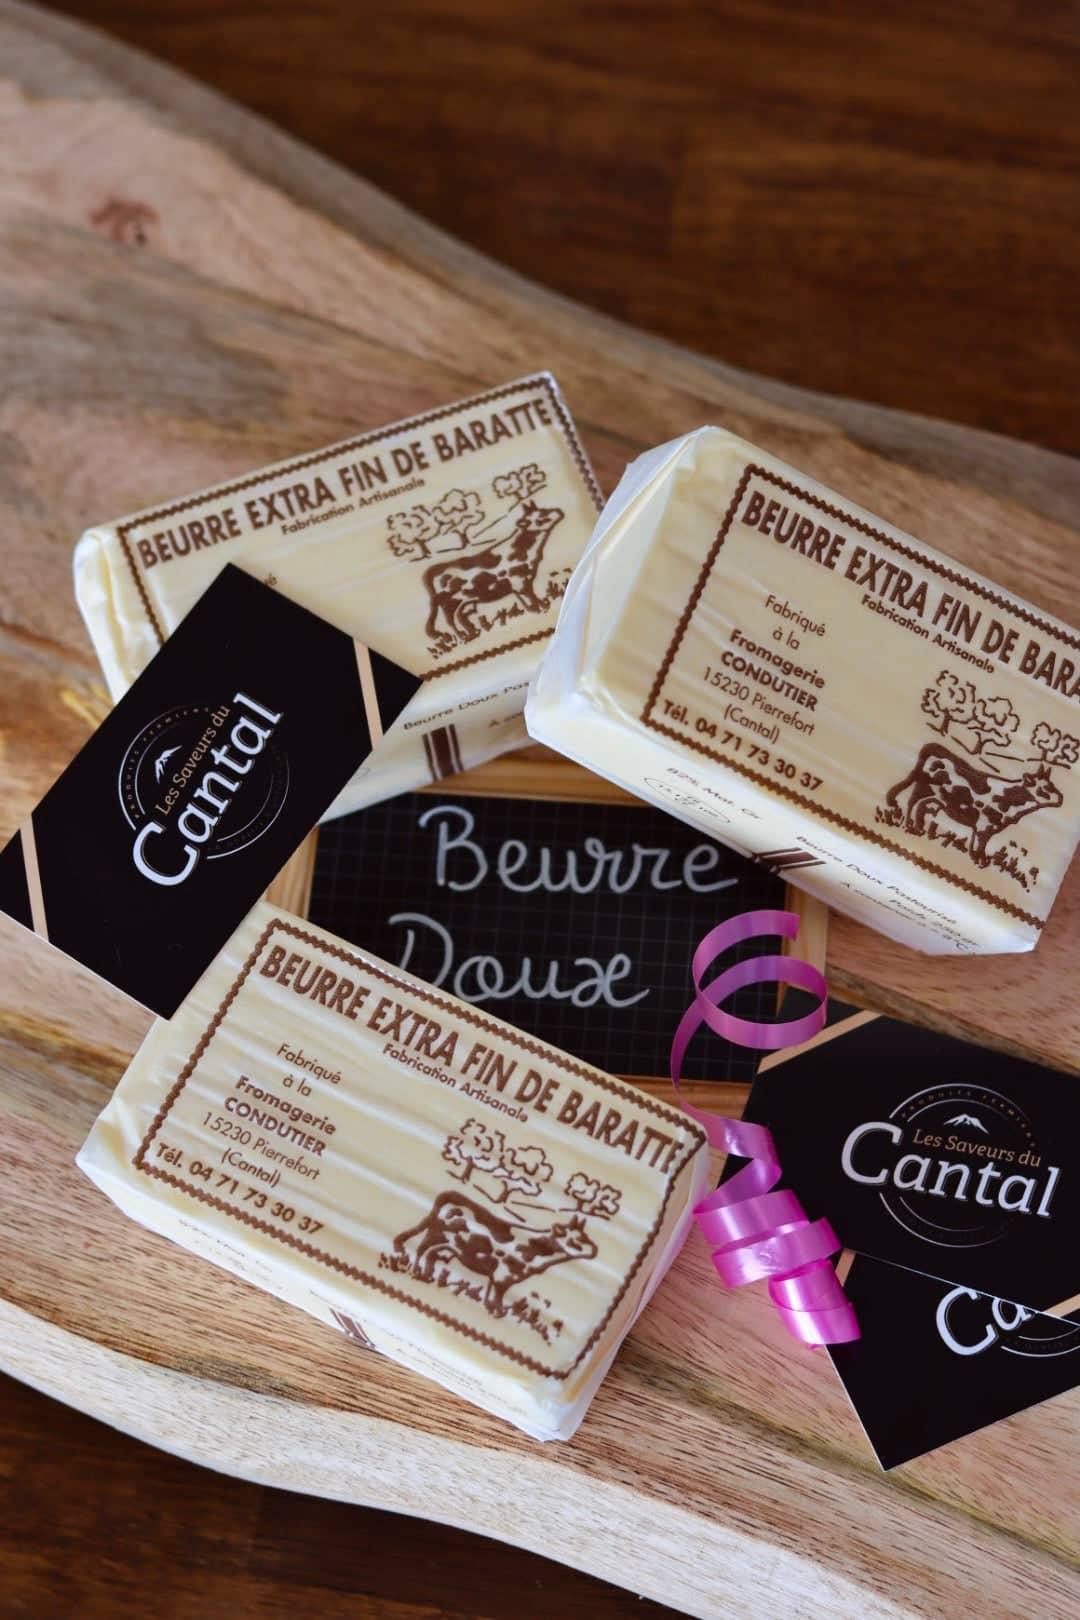 
                  
                    Beurre Doux - Les Saveurs du Cantal 
                  
                